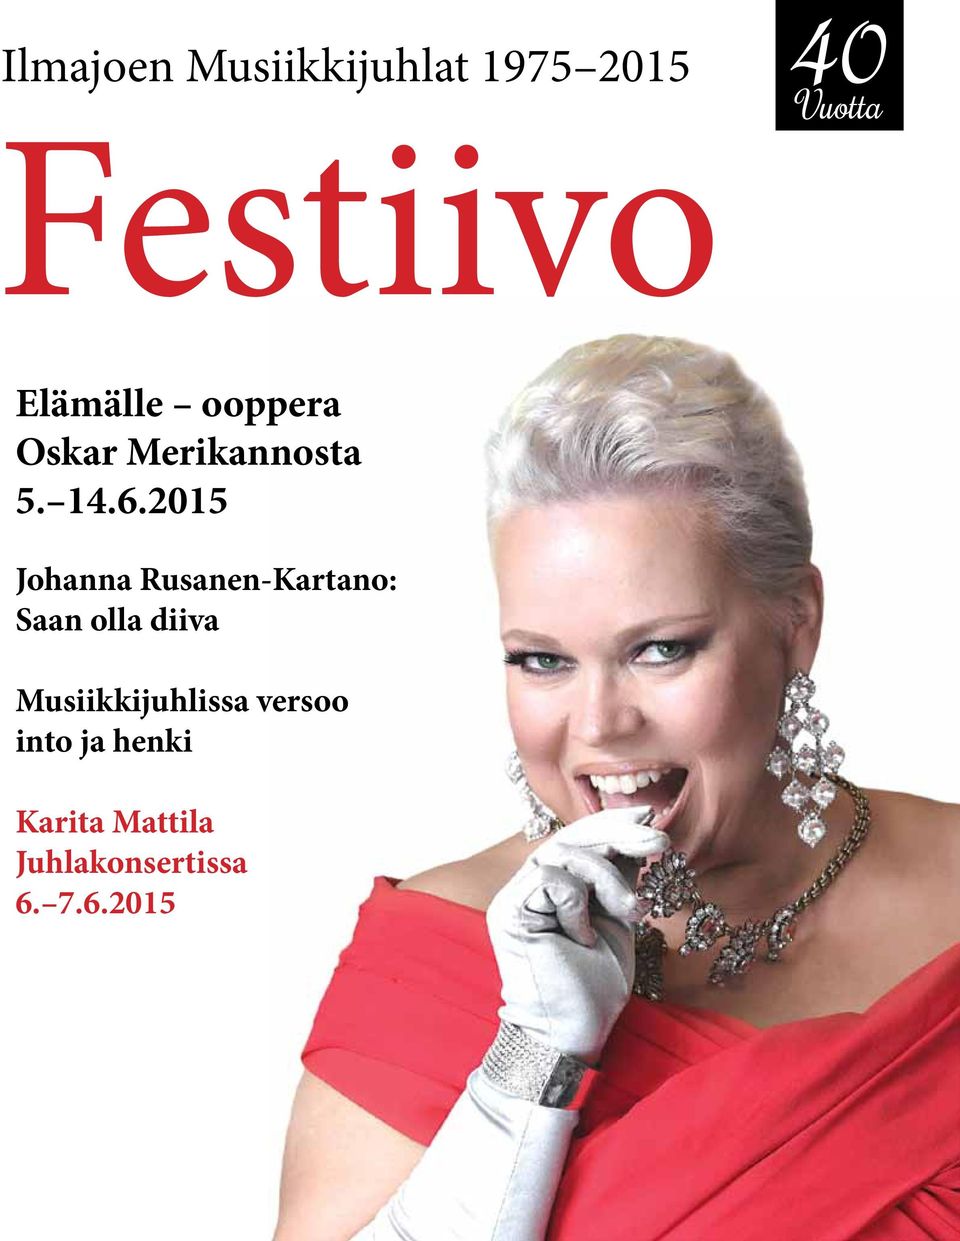 2015 Johanna Rusanen-Kartano: Saan olla diiva